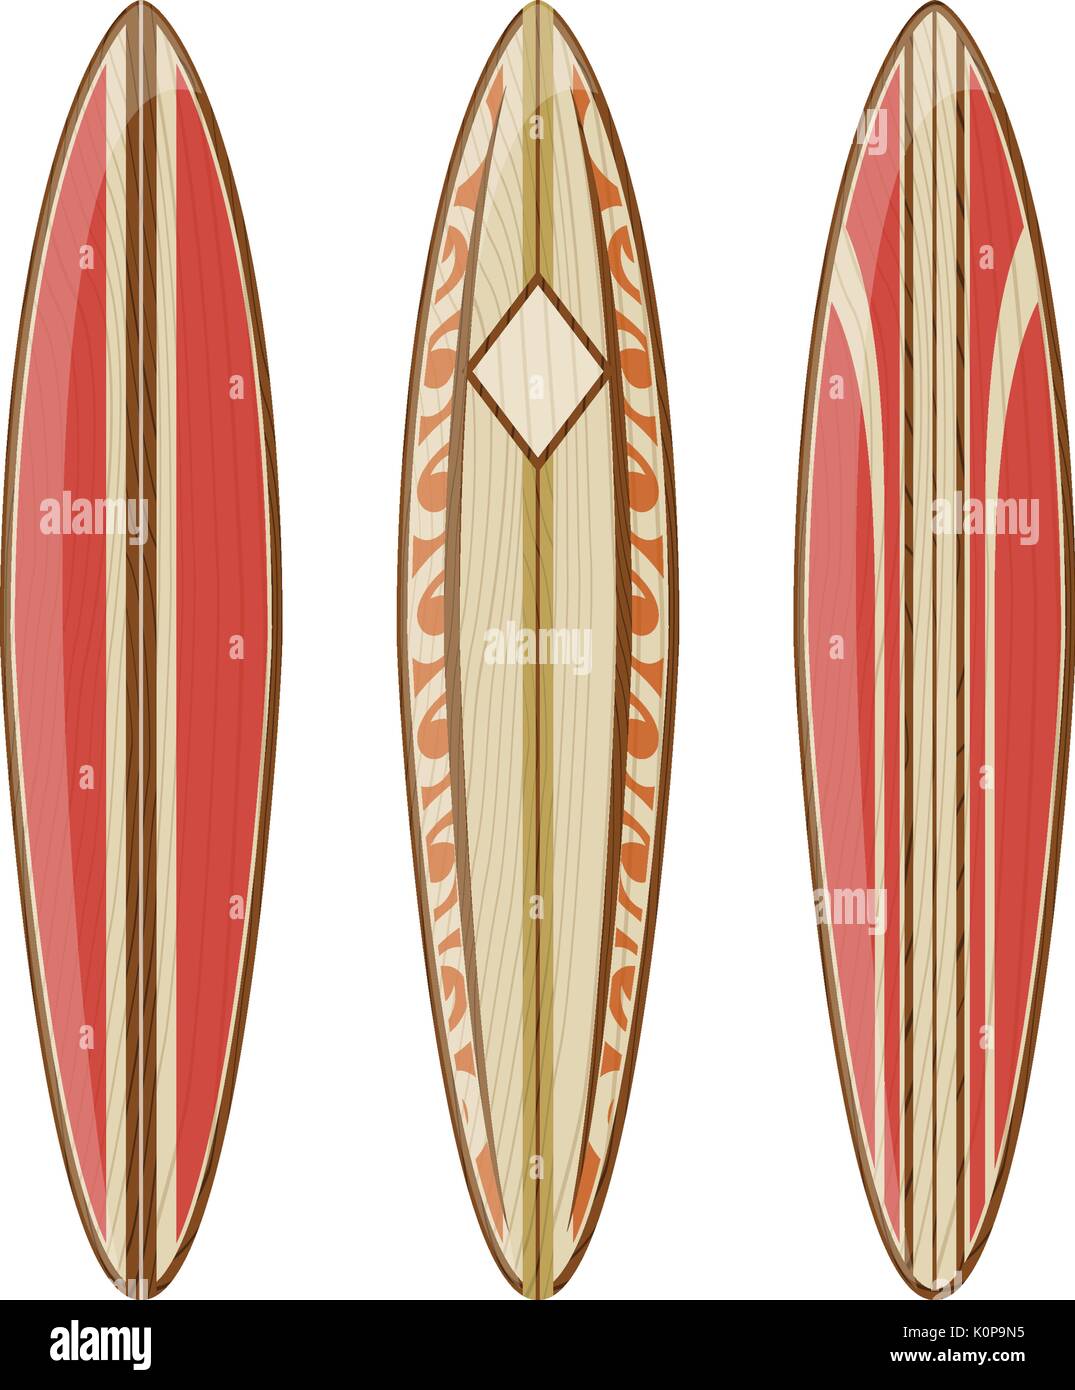 Holz- surfbretter auf weißem Hintergrund, Vektor Format sehr einfach zu bearbeiten, keine Steigungen, nur feste Farben Stock Vektor